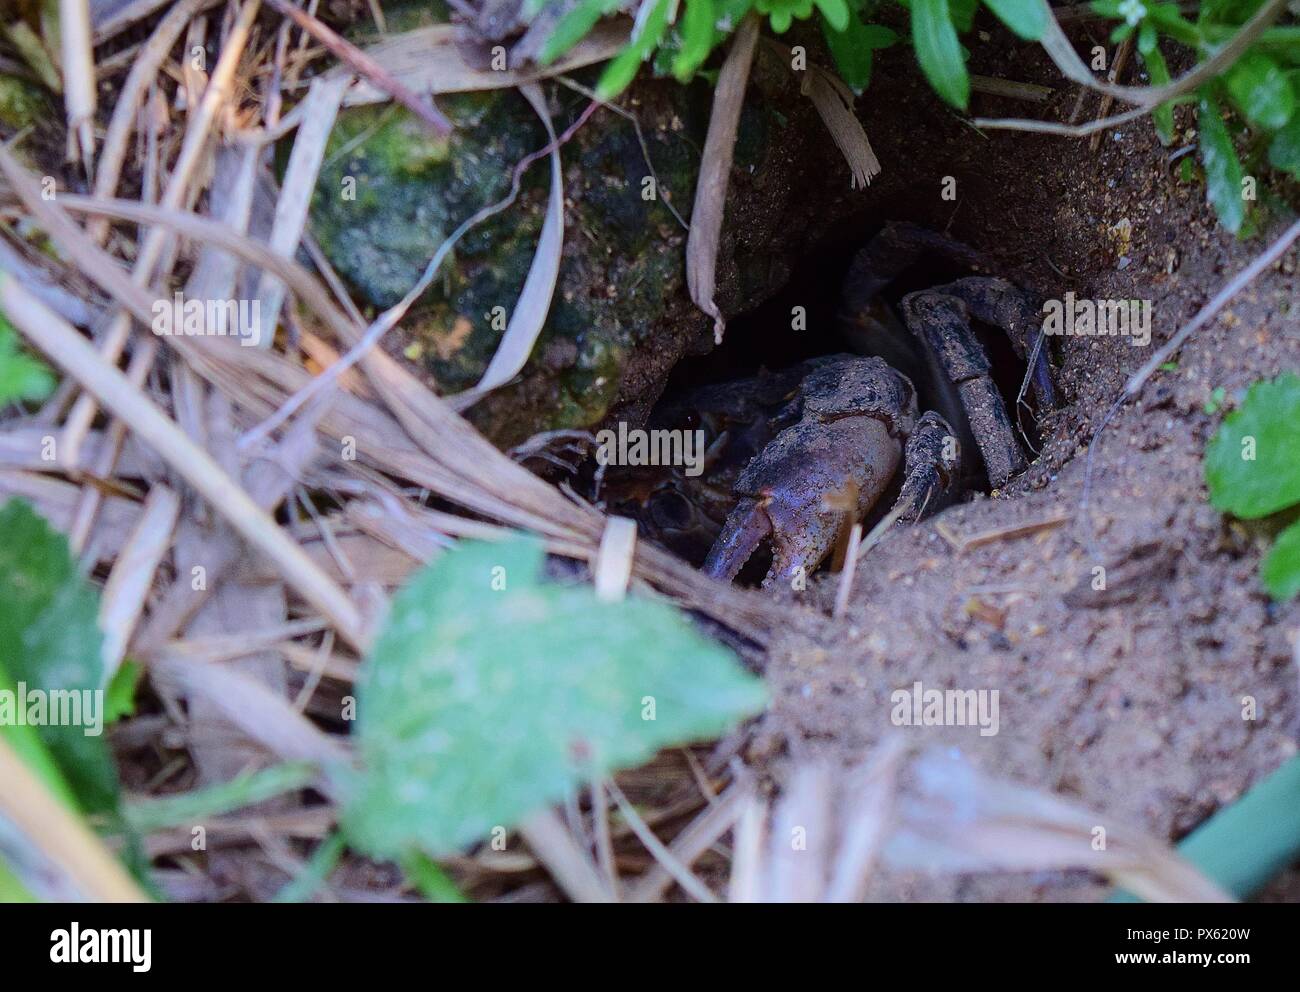 Maltese crabe d'eau douce, Potamon fluviatile, nid, terrier boueux griffes pour défense contre les intrus. menacé crabe rares trouvés sur les îles maltaises Banque D'Images